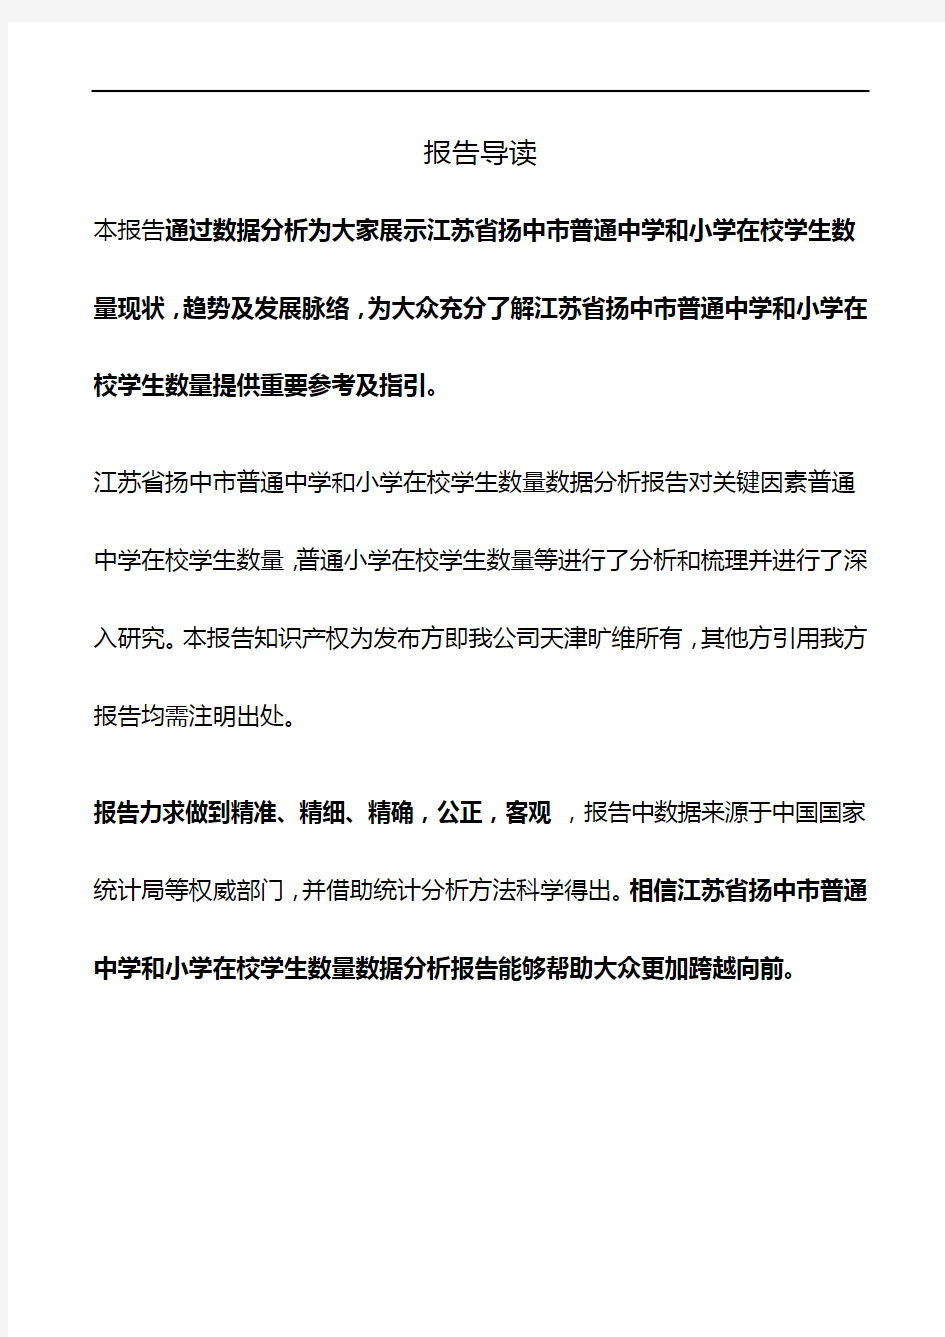 江苏省扬中市普通中学和小学在校学生数量3年数据分析报告2019版